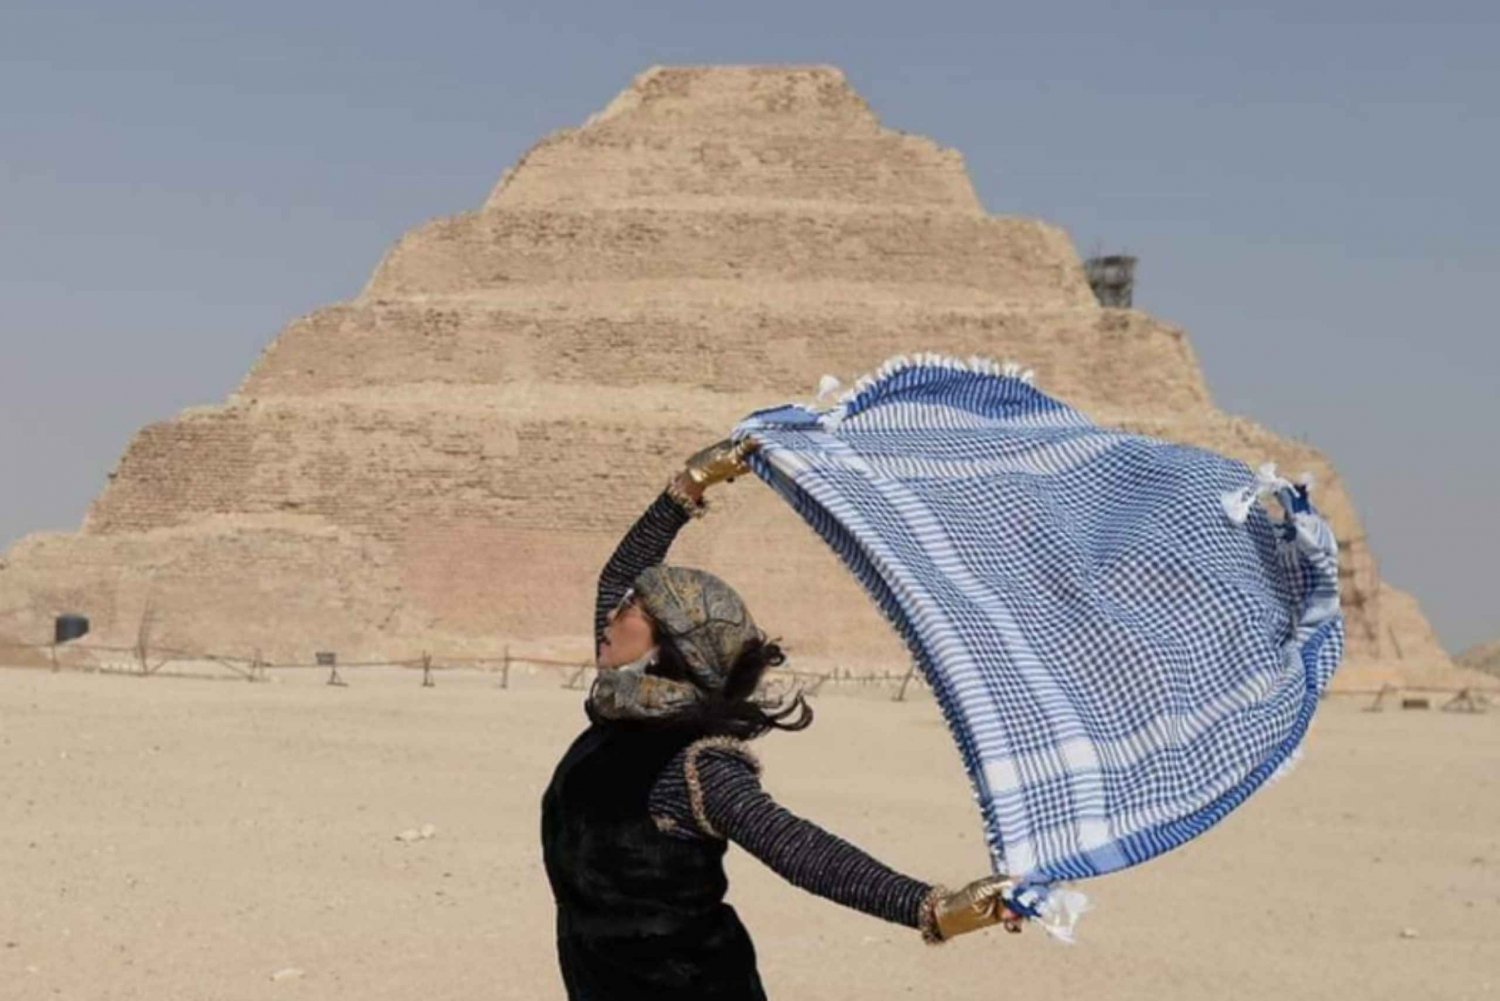 Privat dagstur till pyramiderna i Giza och Sakkara